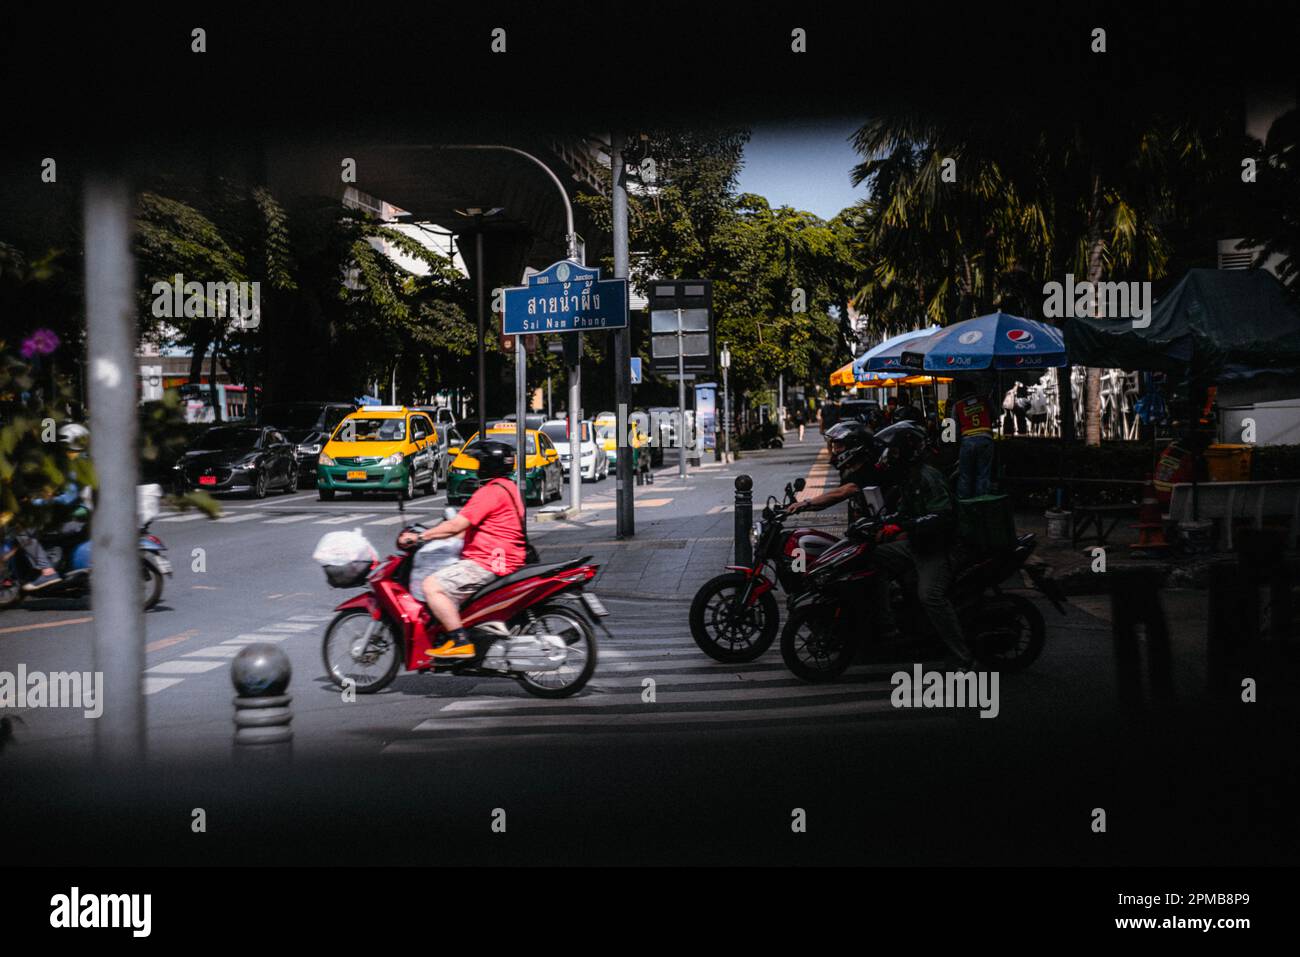 Die asiatische Metropole Bangkok wurde mit Motorrädern, Autos, Taxis und vielen Menschen, die sich im Chaos der Großstadt bewegen, erschossen Stockfoto